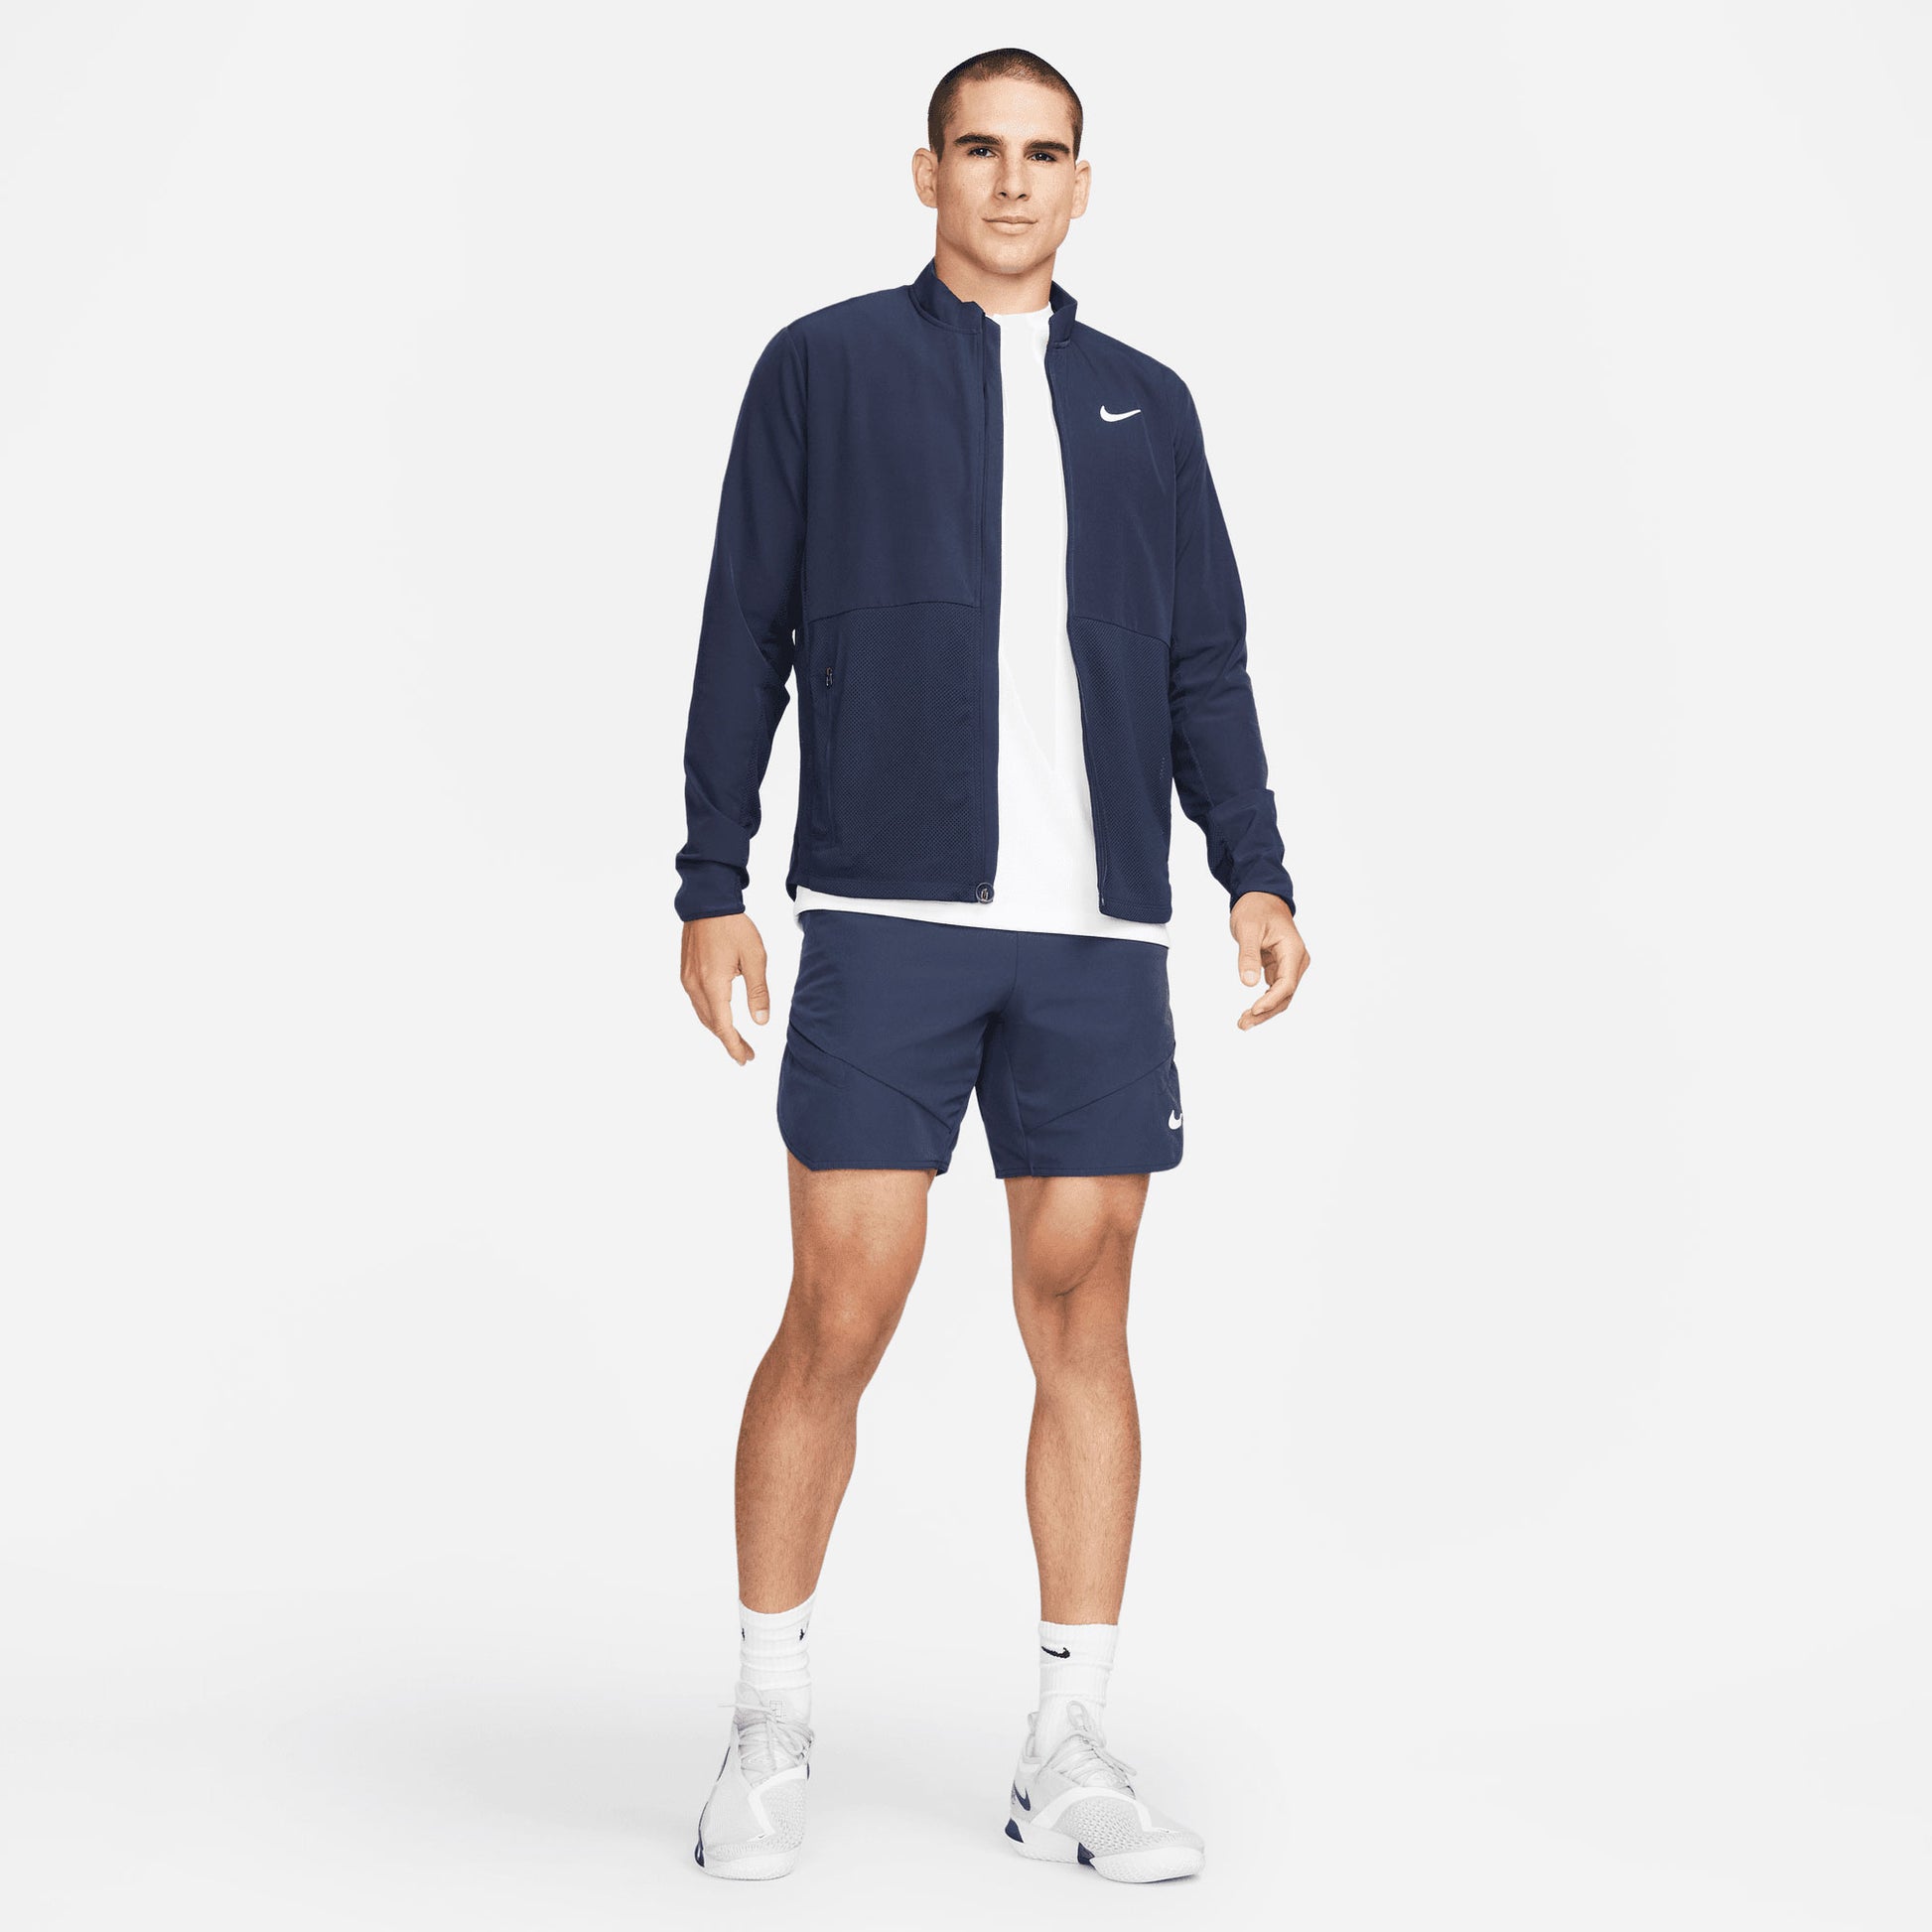 NikeCourt Advantage Men's Packable Tennis Jacket Blue (7)